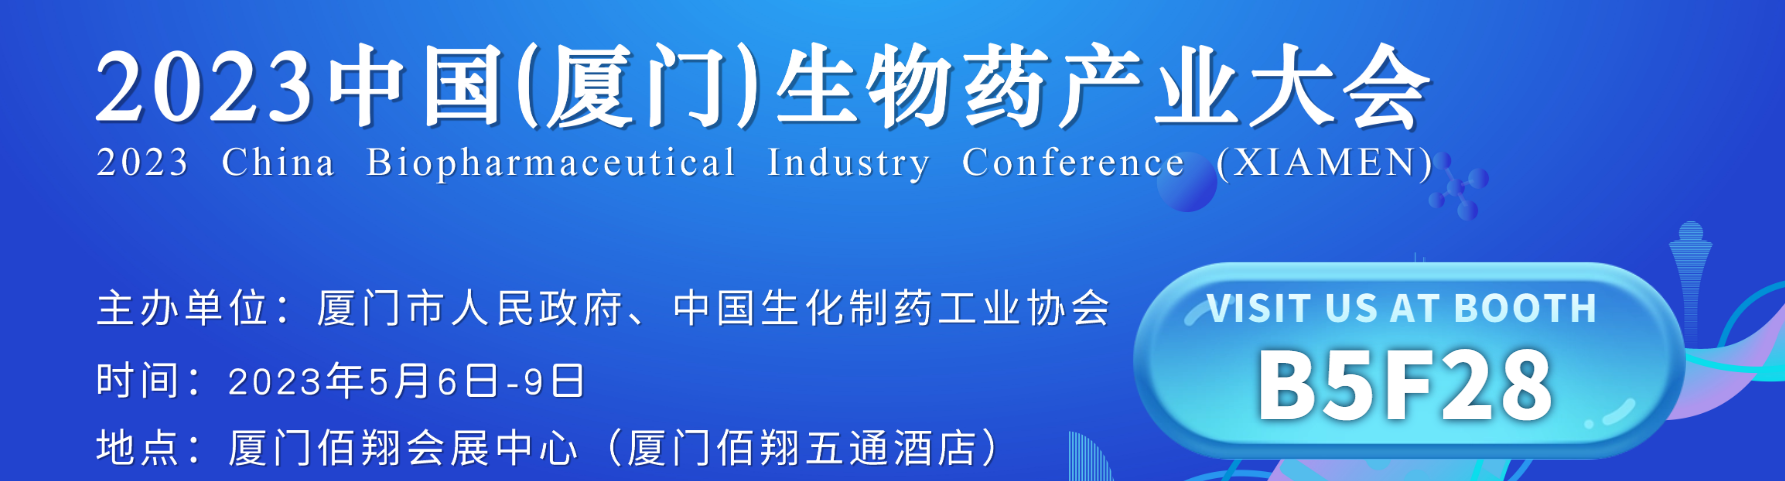 键凯科技邀您莅临2023中国(厦门)生物药产业大会